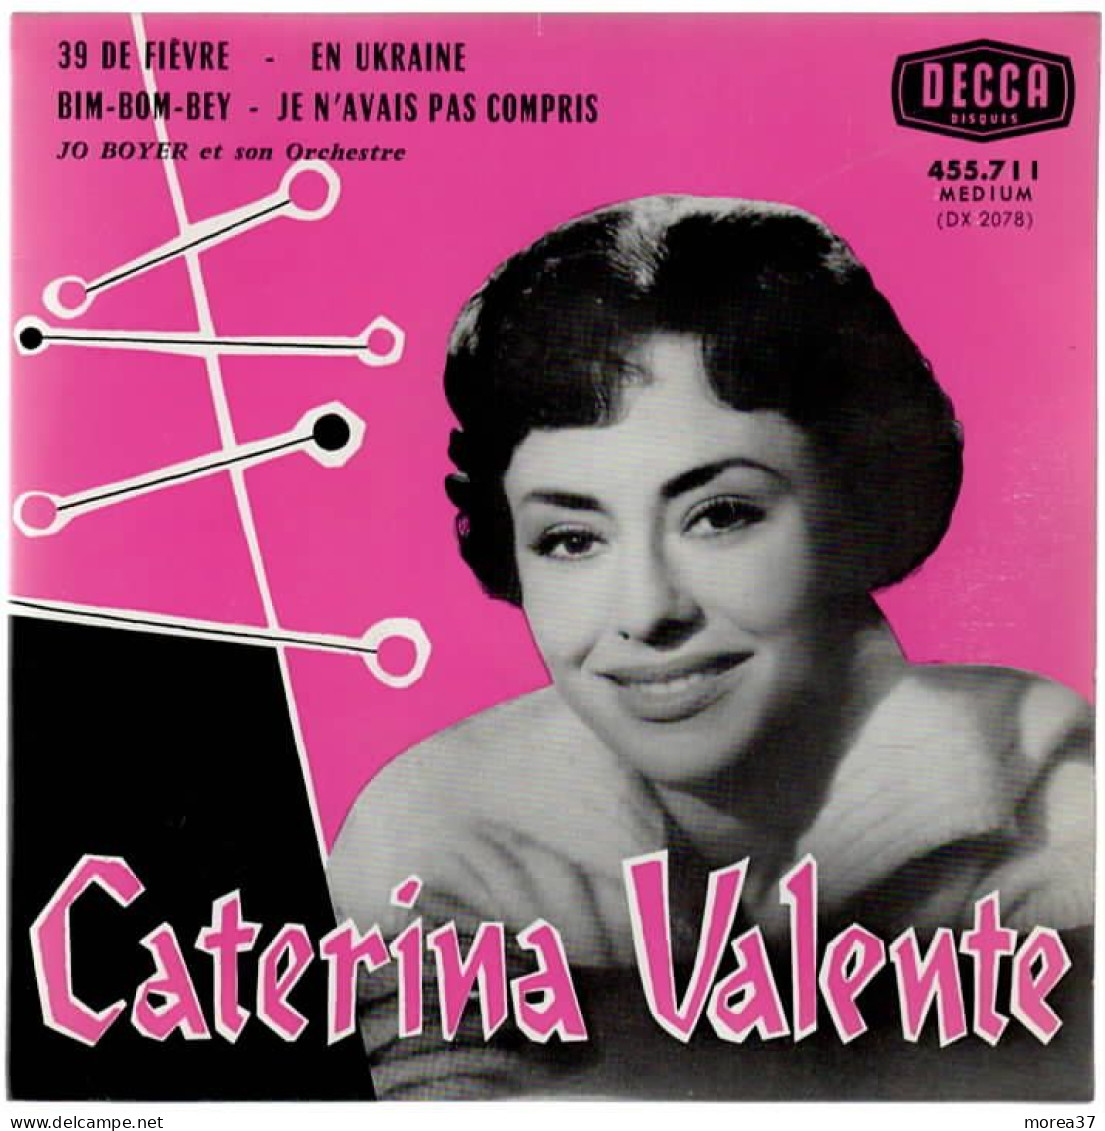 CATERINA VALENTE   39 De Fièvre   DECCA  455.711 - Otros - Canción Francesa